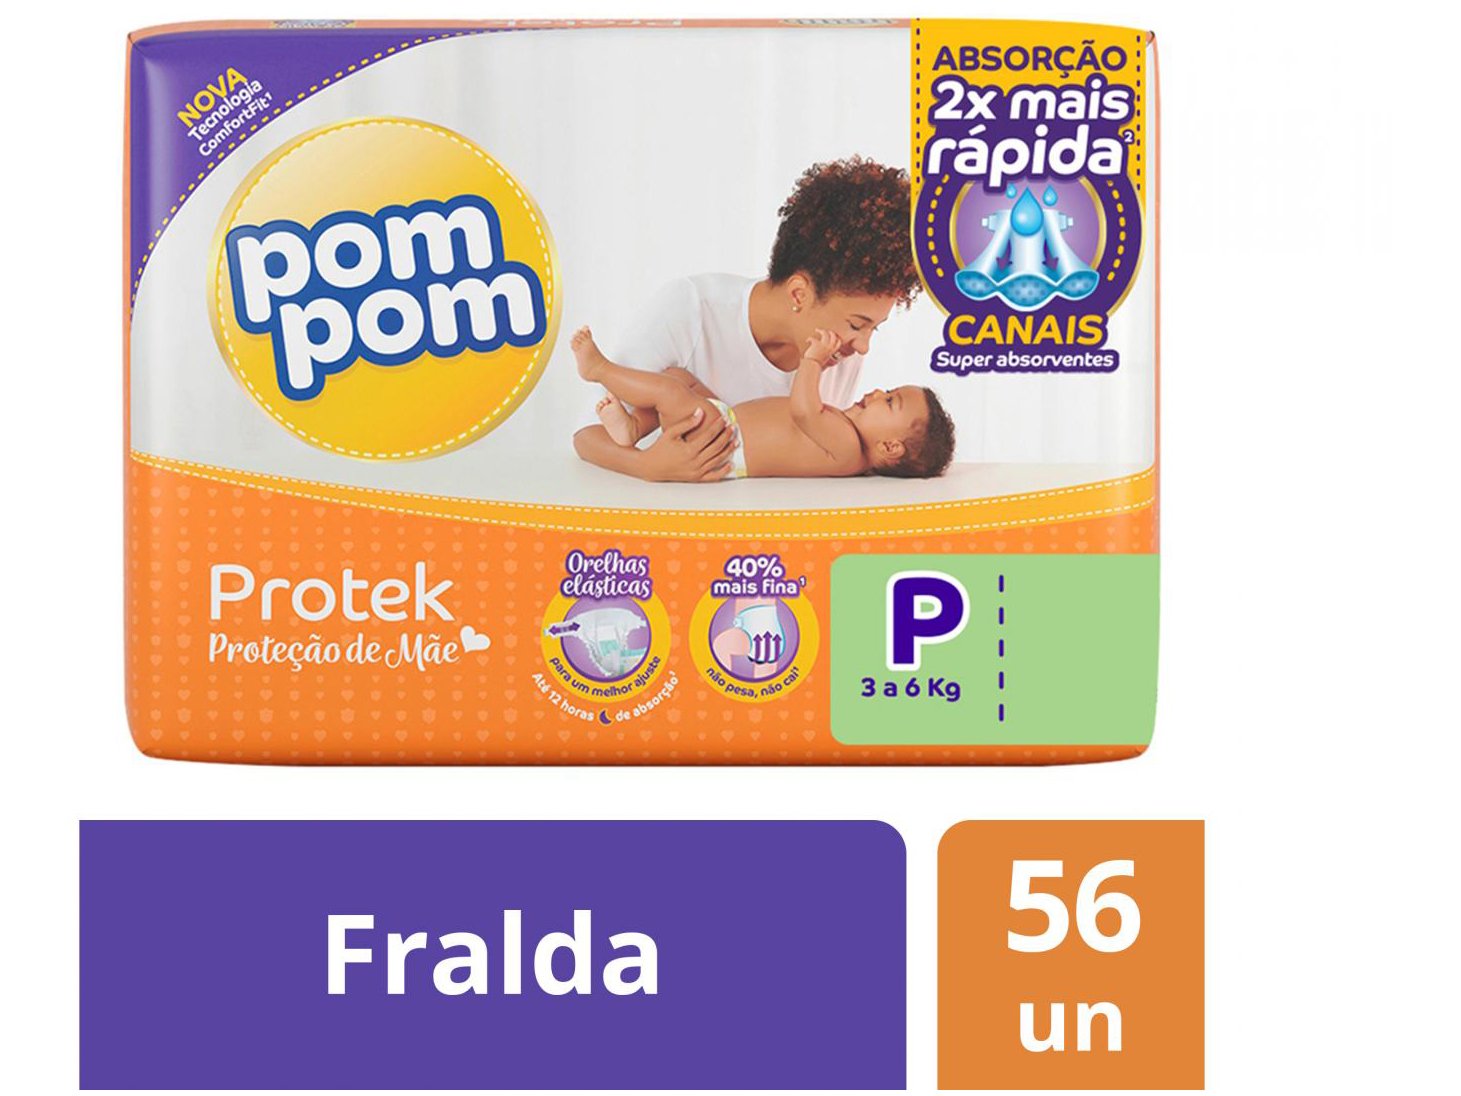 Fralda Pom Pom Protek Proteção de Mãe Mega - P 56 Unidades - 1